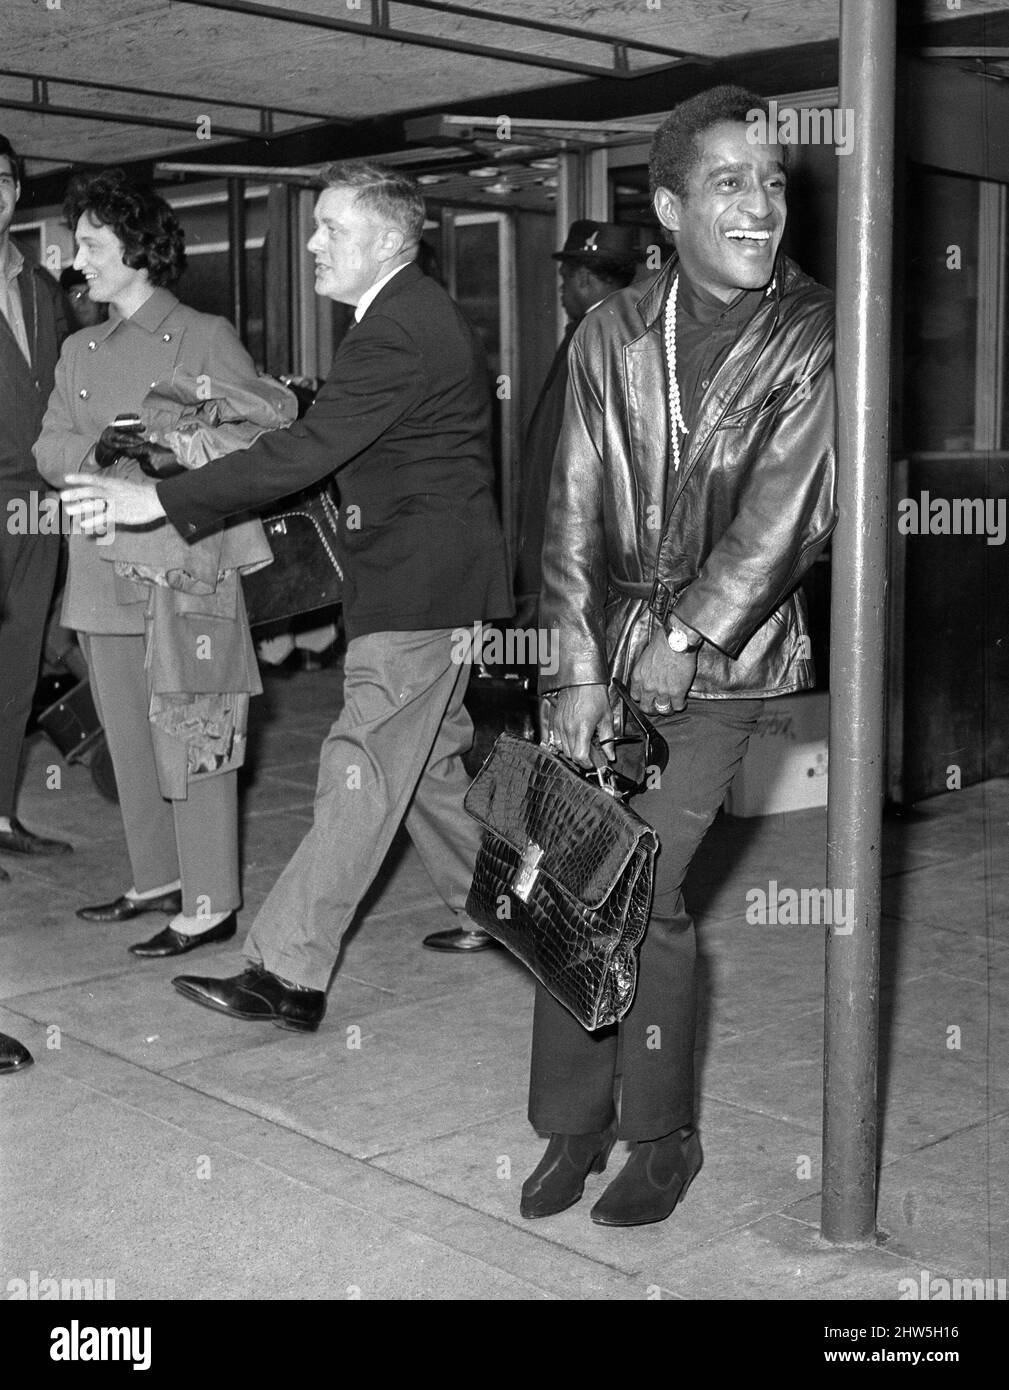 Sammy Davis Jnr. arriving at LAP. 16th September 1967. P67-401-18 Stock Photo